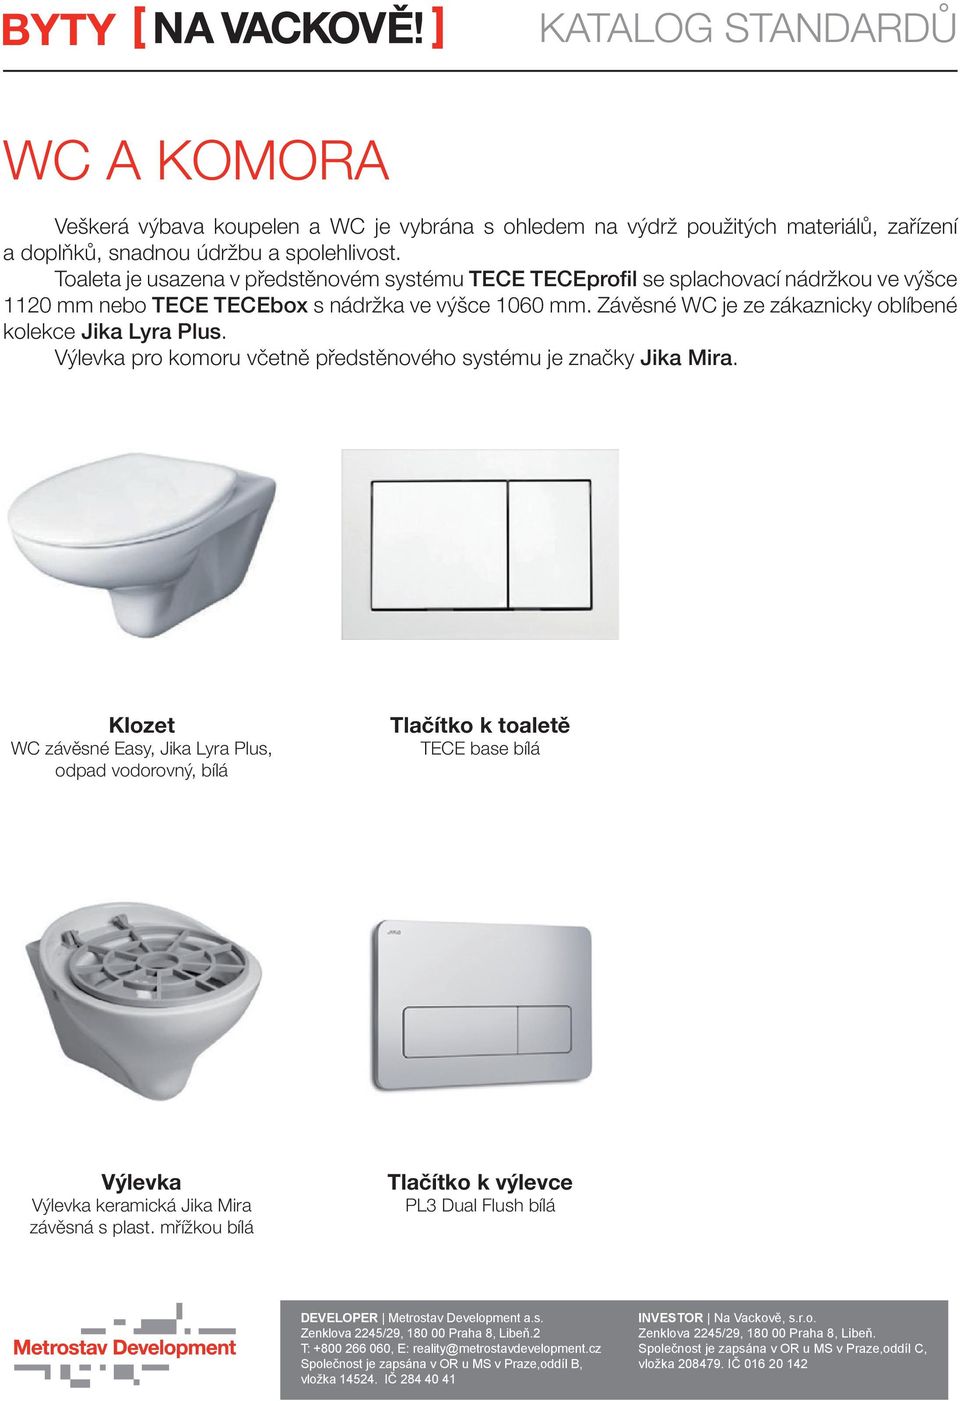 Závěsné WC je ze zákaznicky oblíbené kolekce Jika Lyra Plus. Výlevka pro komoru včetně předstěnového systému je značky Jika Mira.